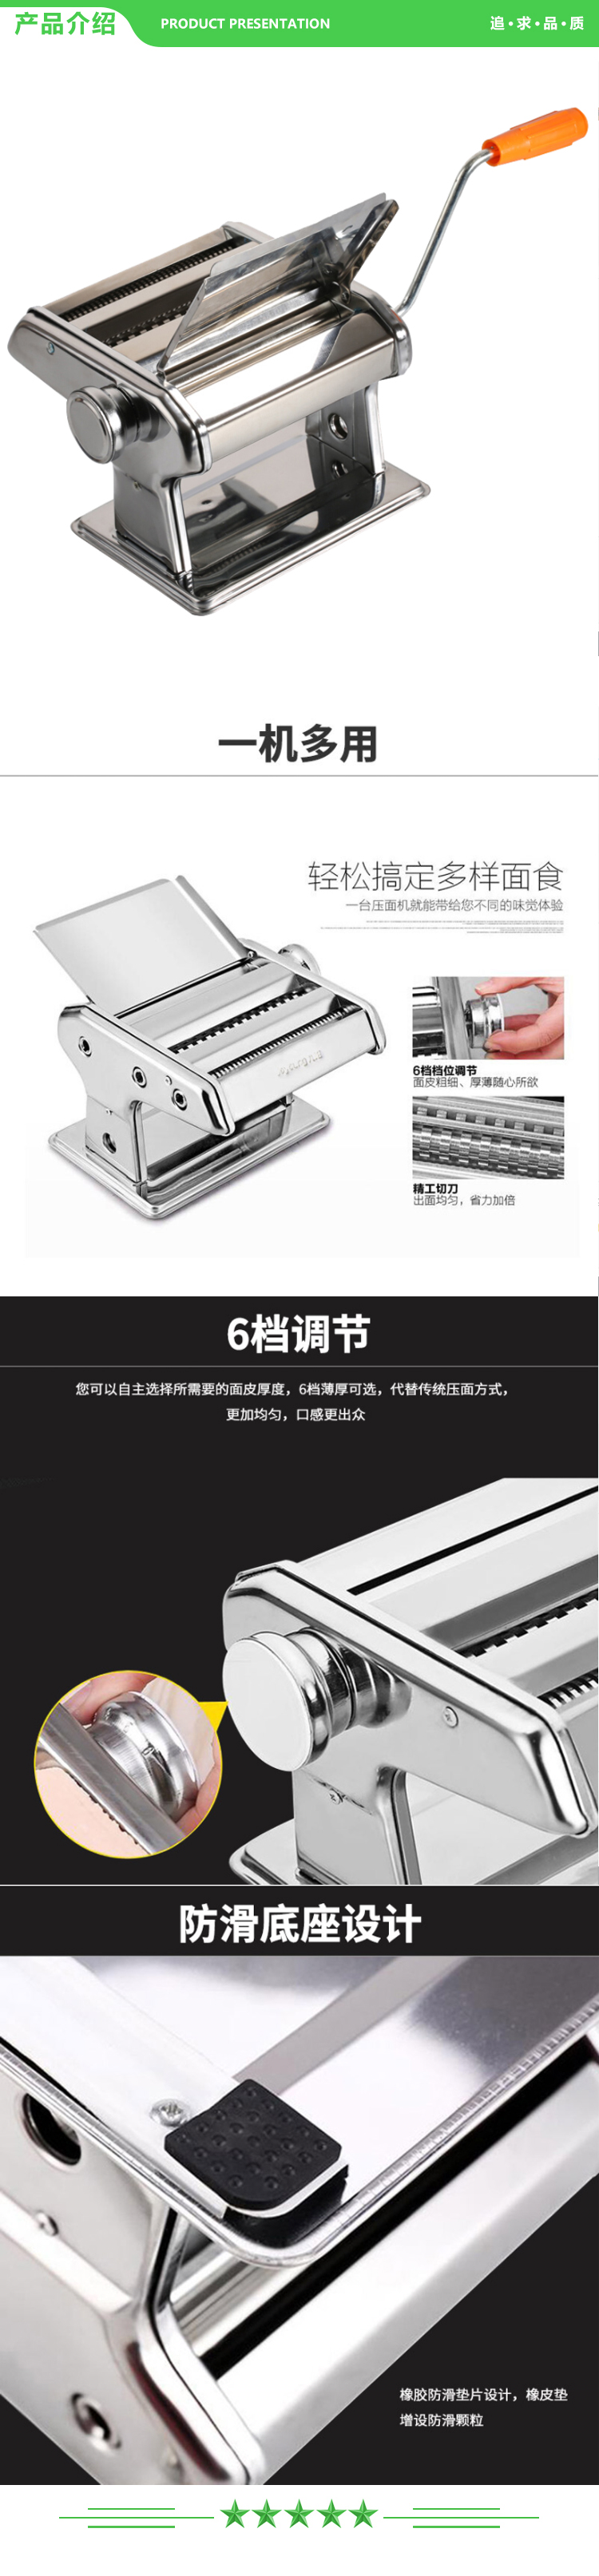 九阳 Joyoung JYN-YM1 小型压面机 不锈钢手摇面条机 压面 擀面一机多用.jpg